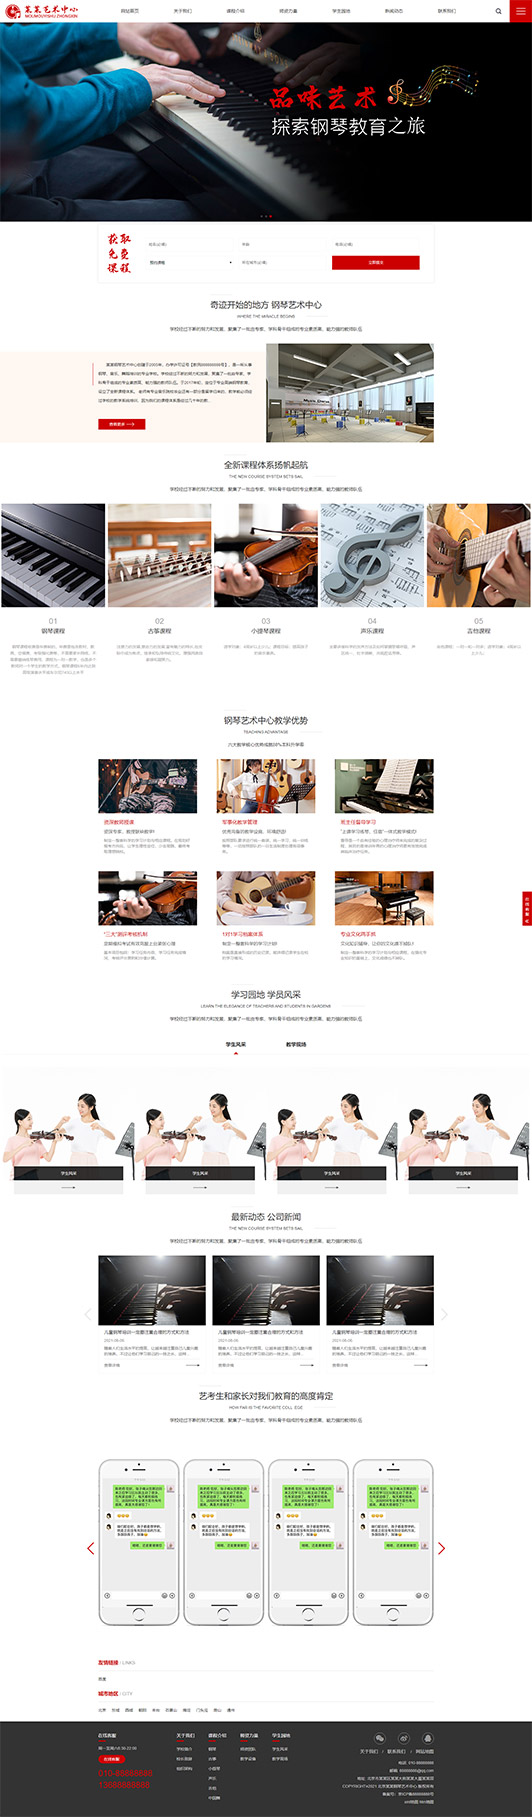 松原钢琴艺术培训公司响应式企业网站